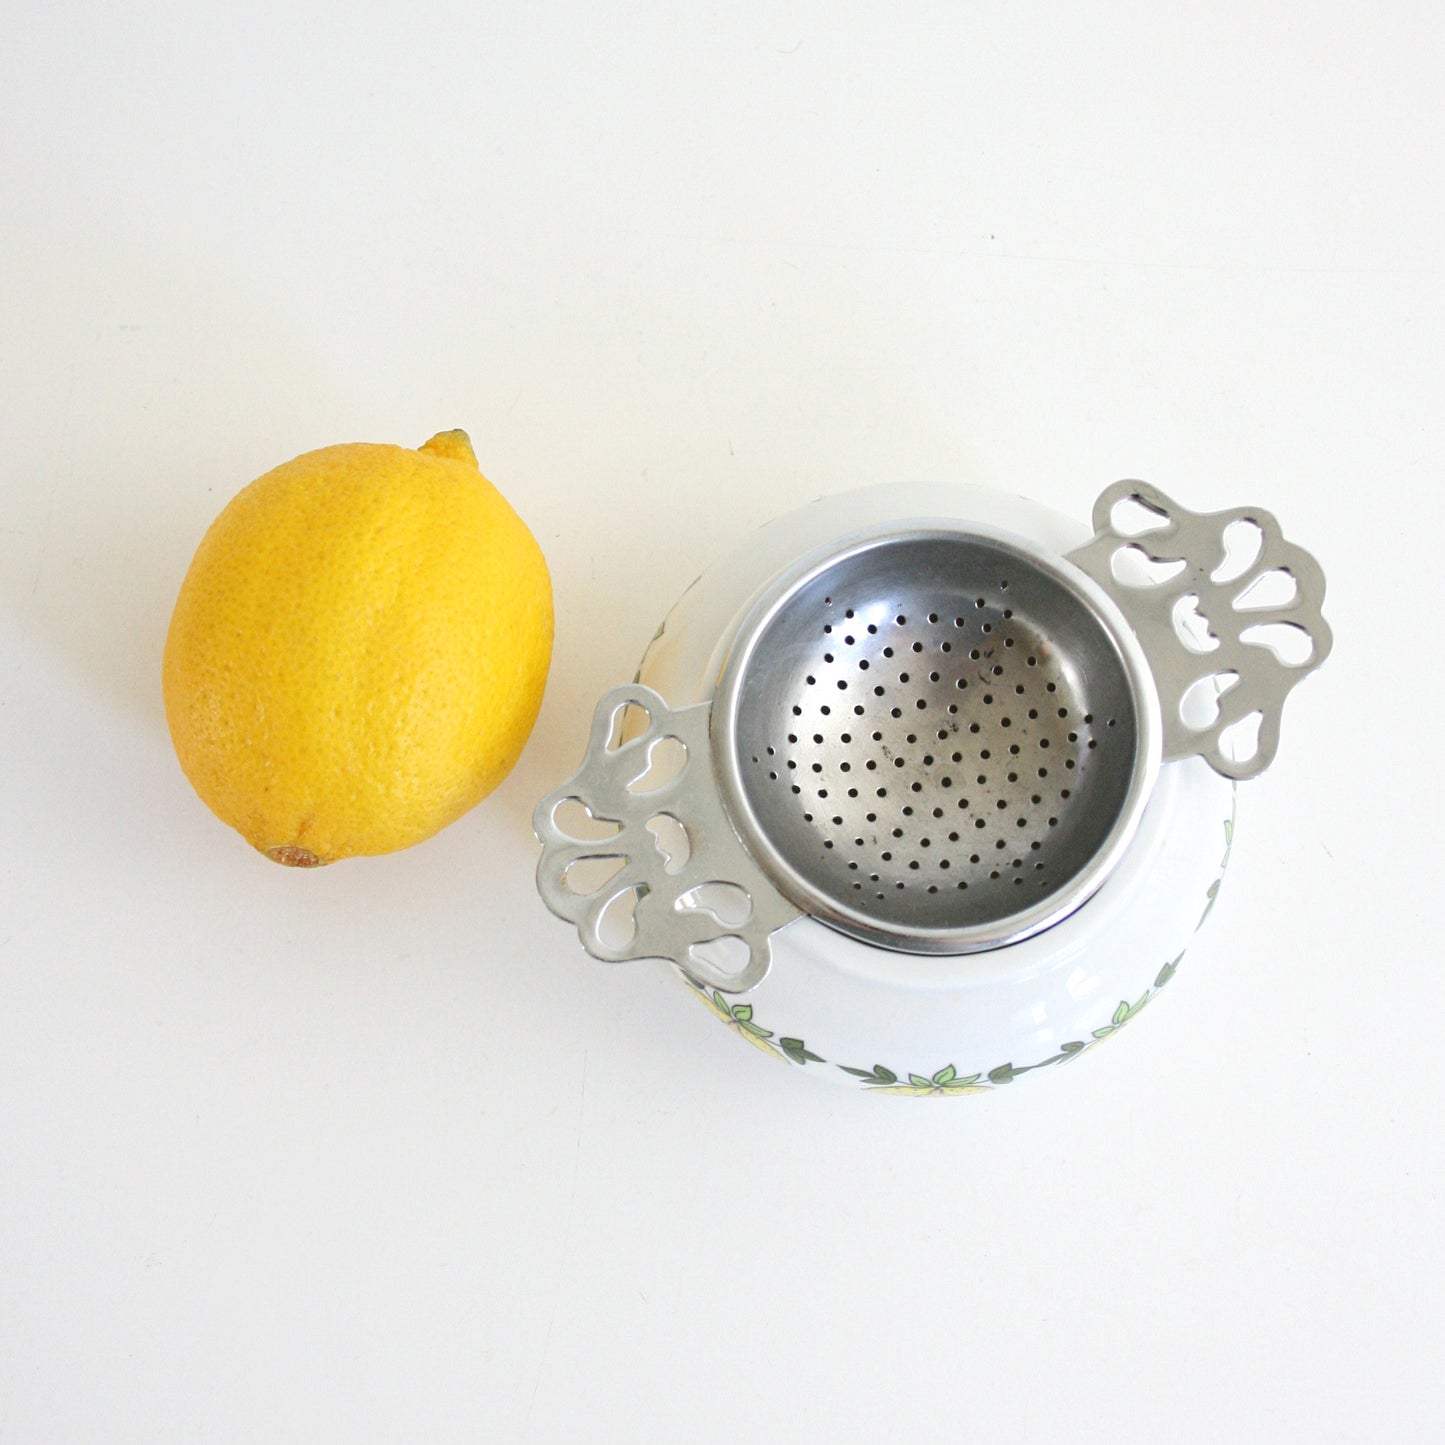 SOLD - Vintage Porcelain & Metal Tea Bag Holder / Retro Lemons Two Piece Tea Strainer